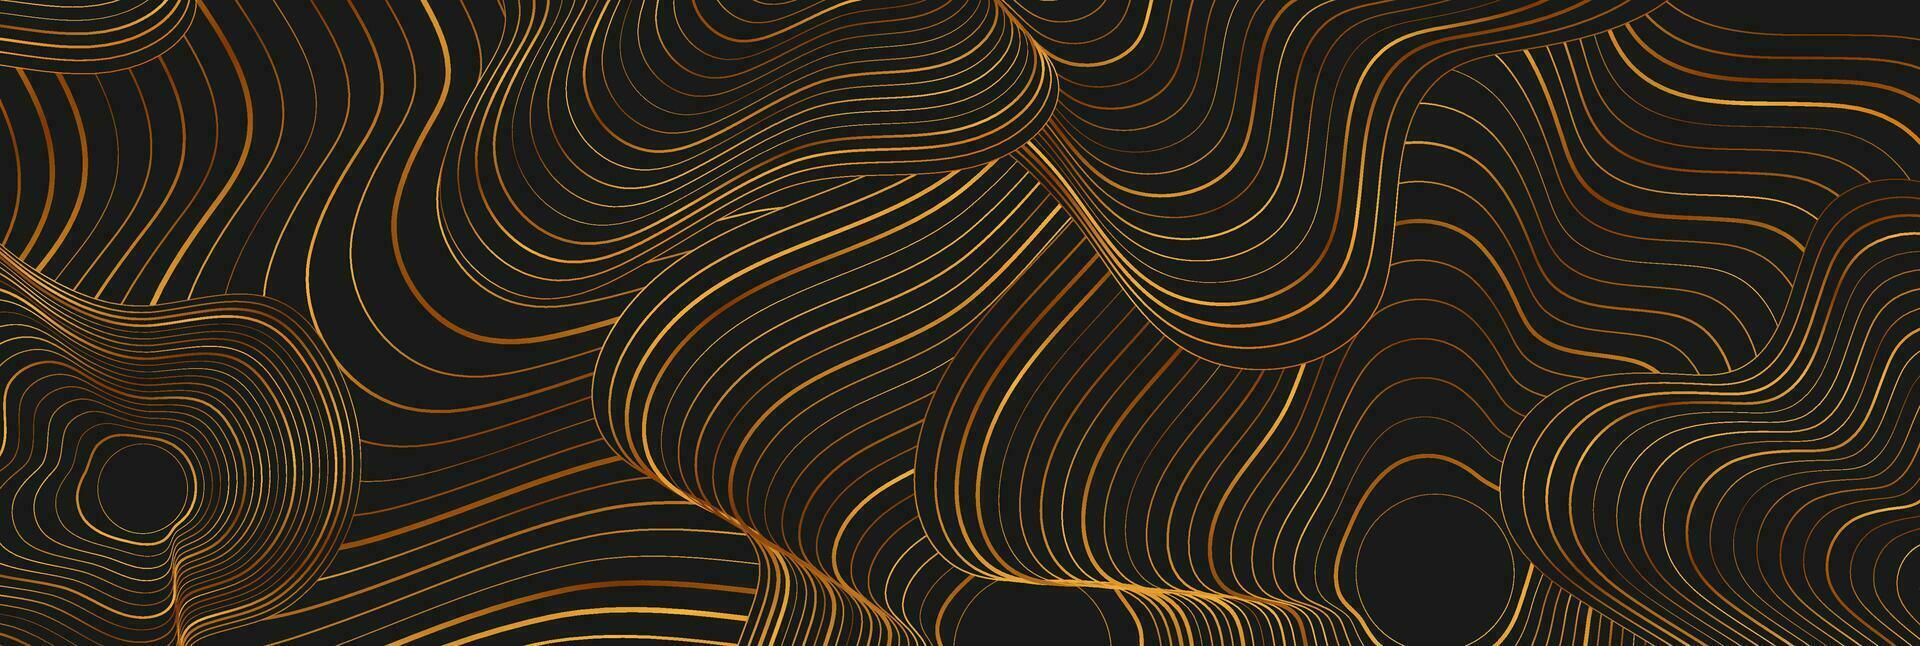 schwarz abstrakt Hintergrund mit golden gebrochen wellig Muster vektor